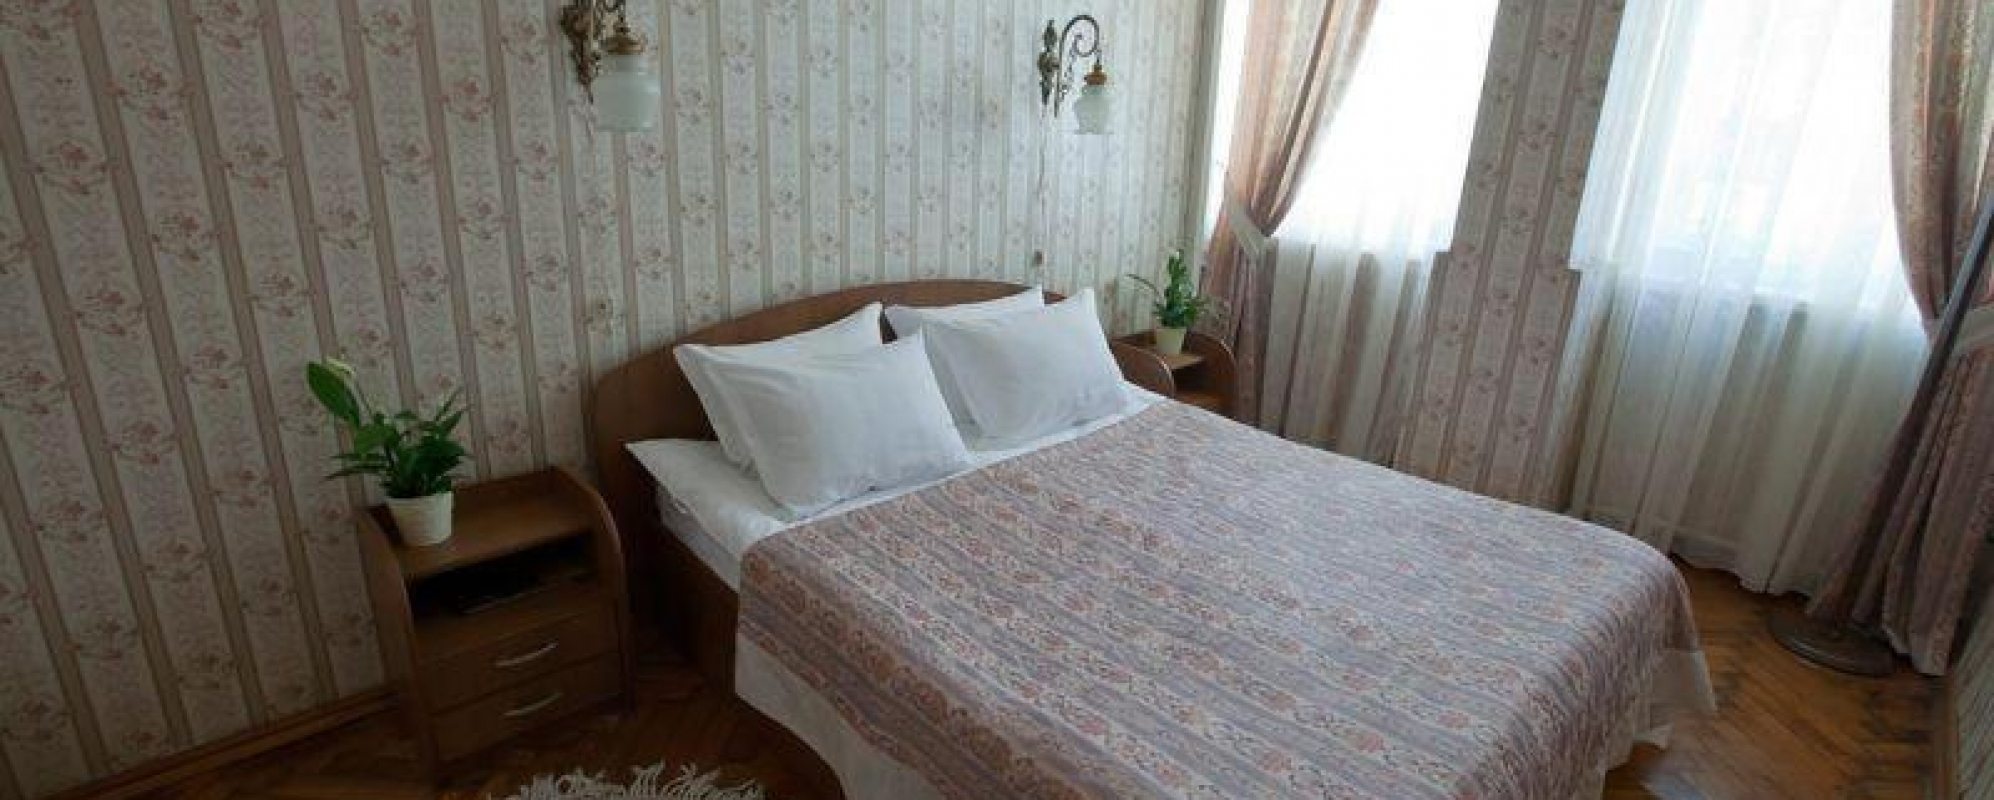 Фотографии гостиницы Волга